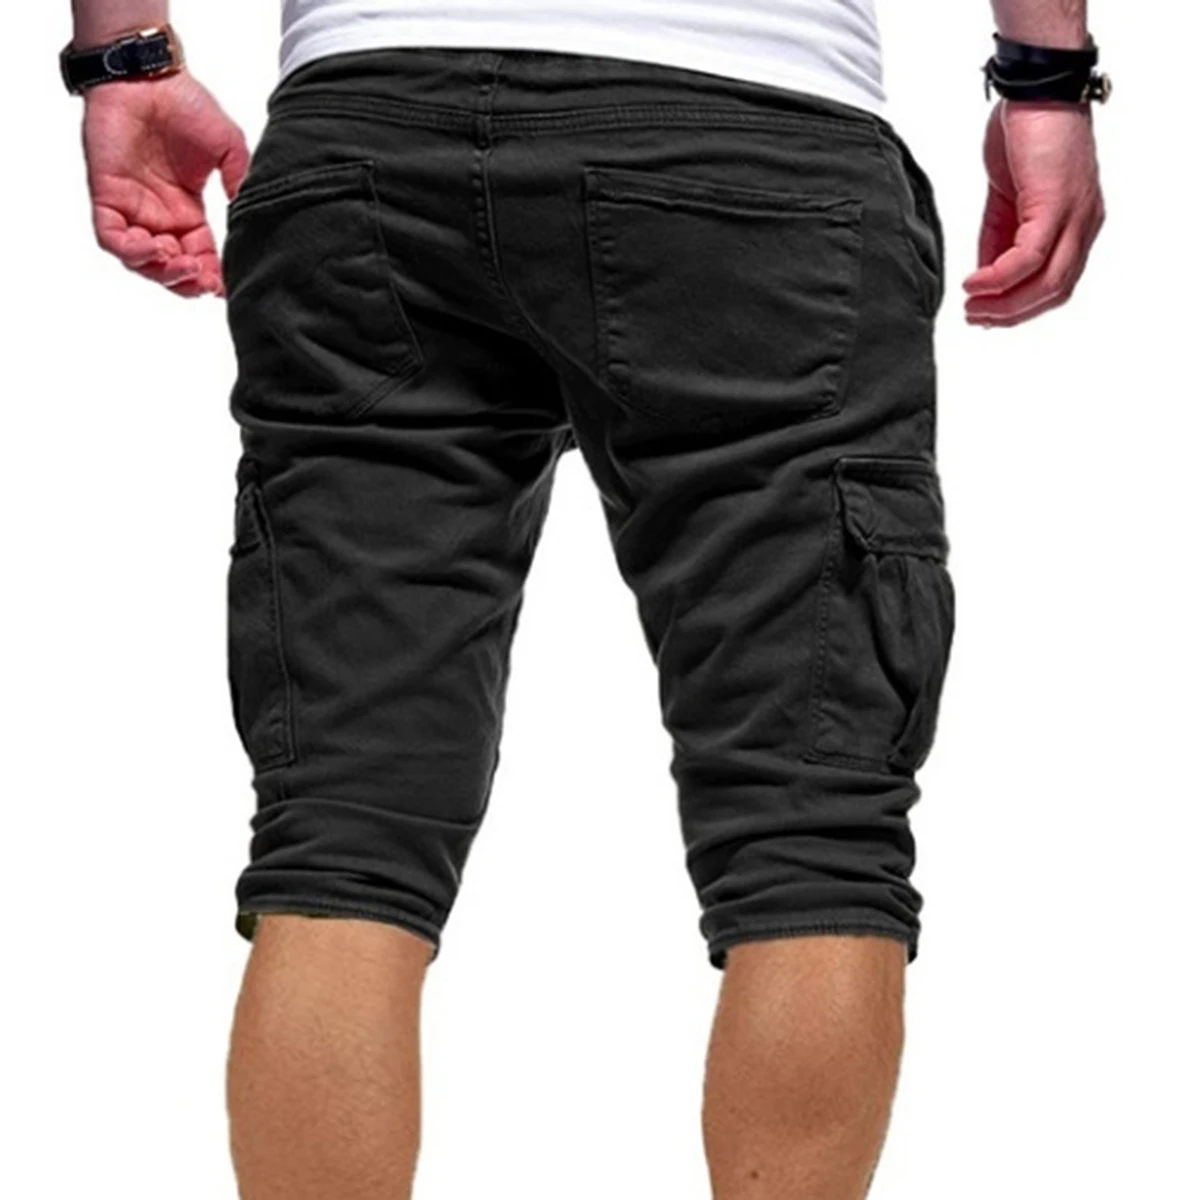 Laamei,, мужские шорты ДЛЯ ФИТНЕССА, повседневные брендовые штаны для тренировок, качественные шорты, мужские спортивные шорты с несколькими карманами